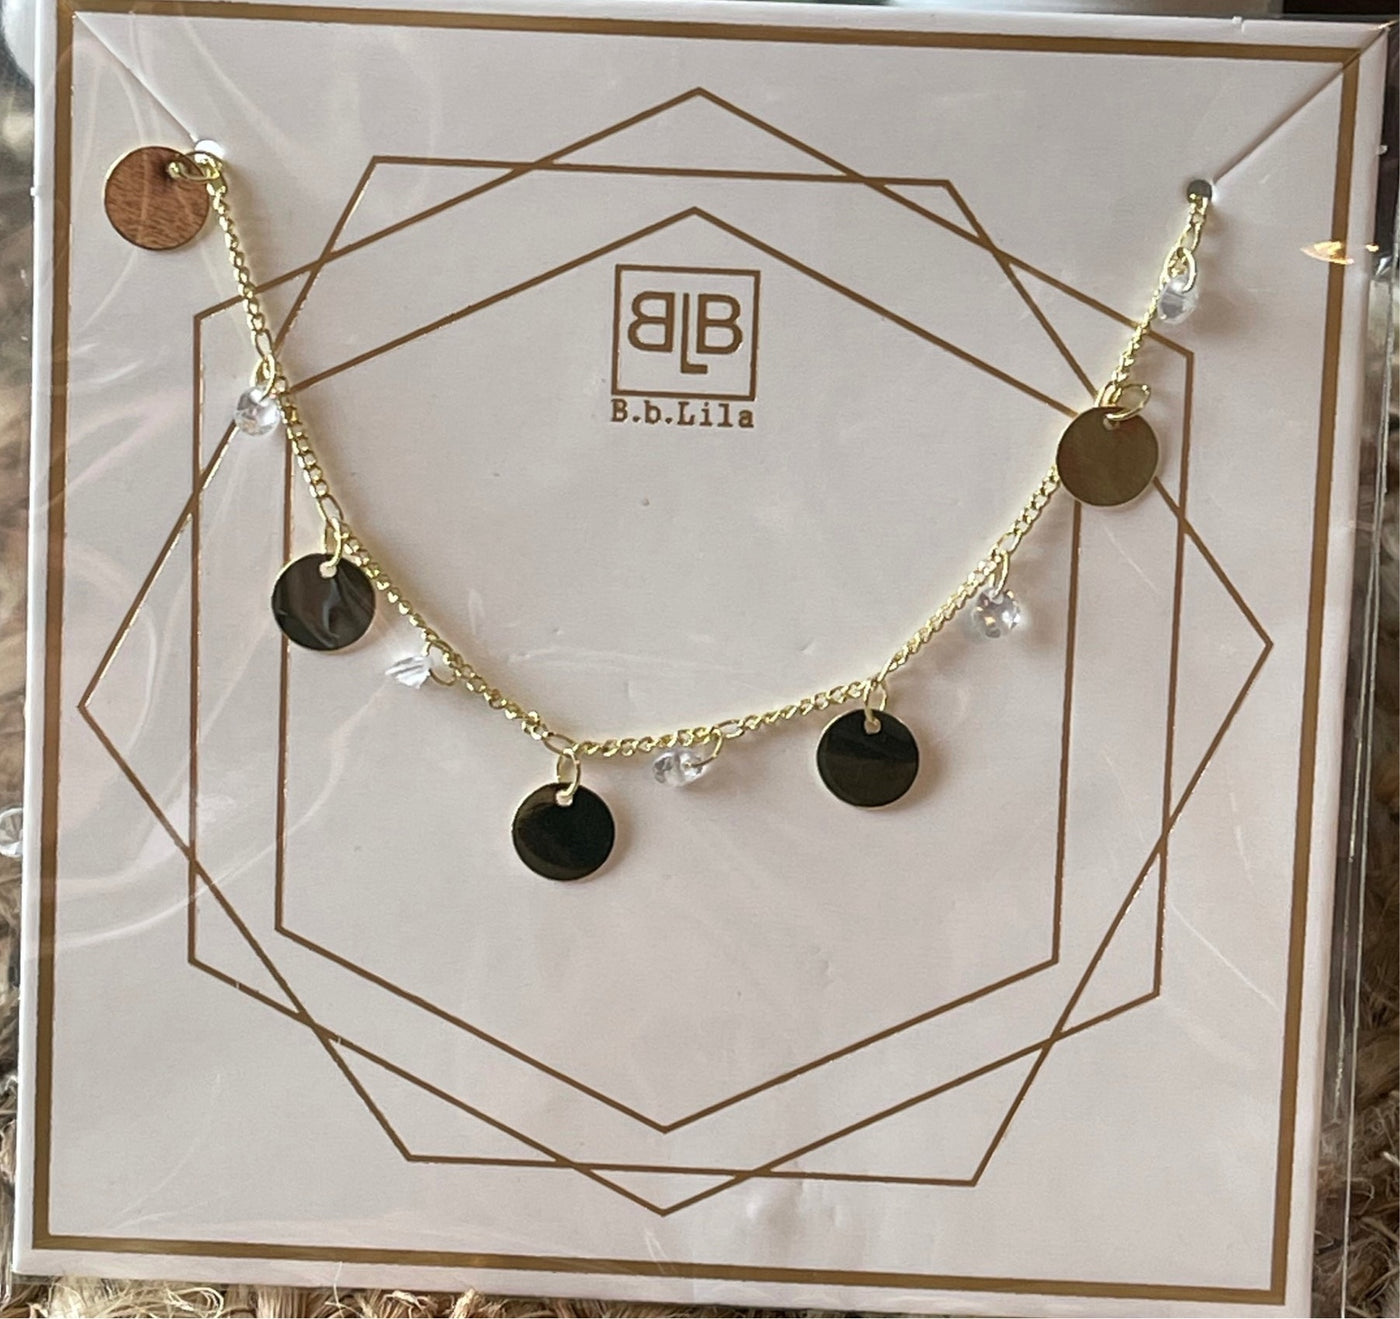 Jewelry by BBLila